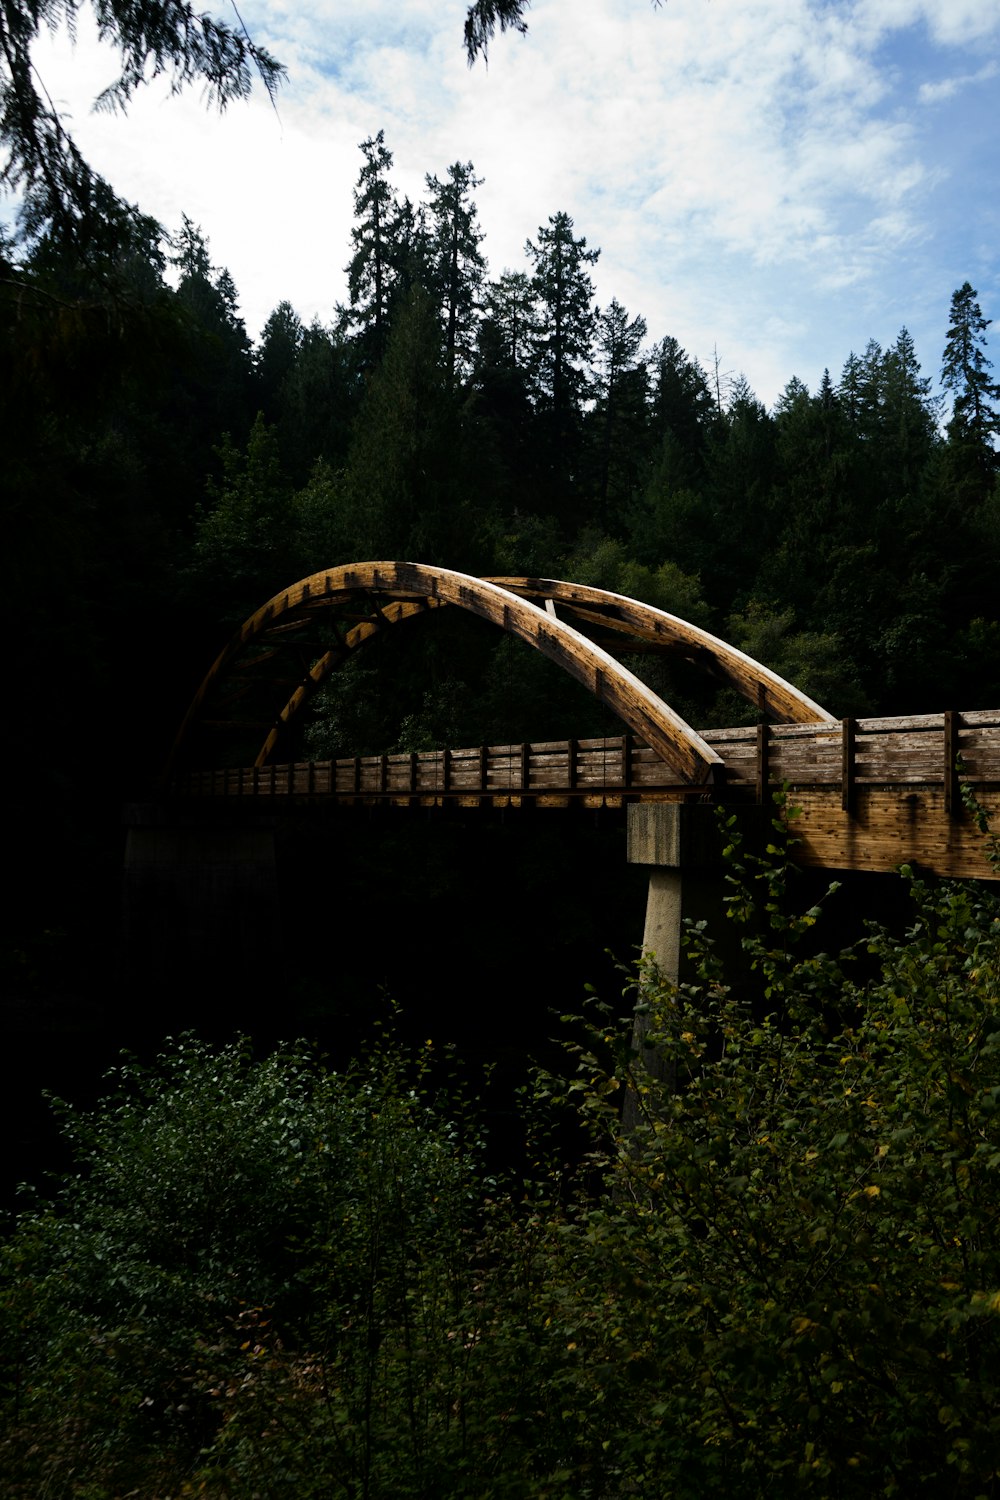 braune Holzbrücke in der Nähe von Grünpflanzen